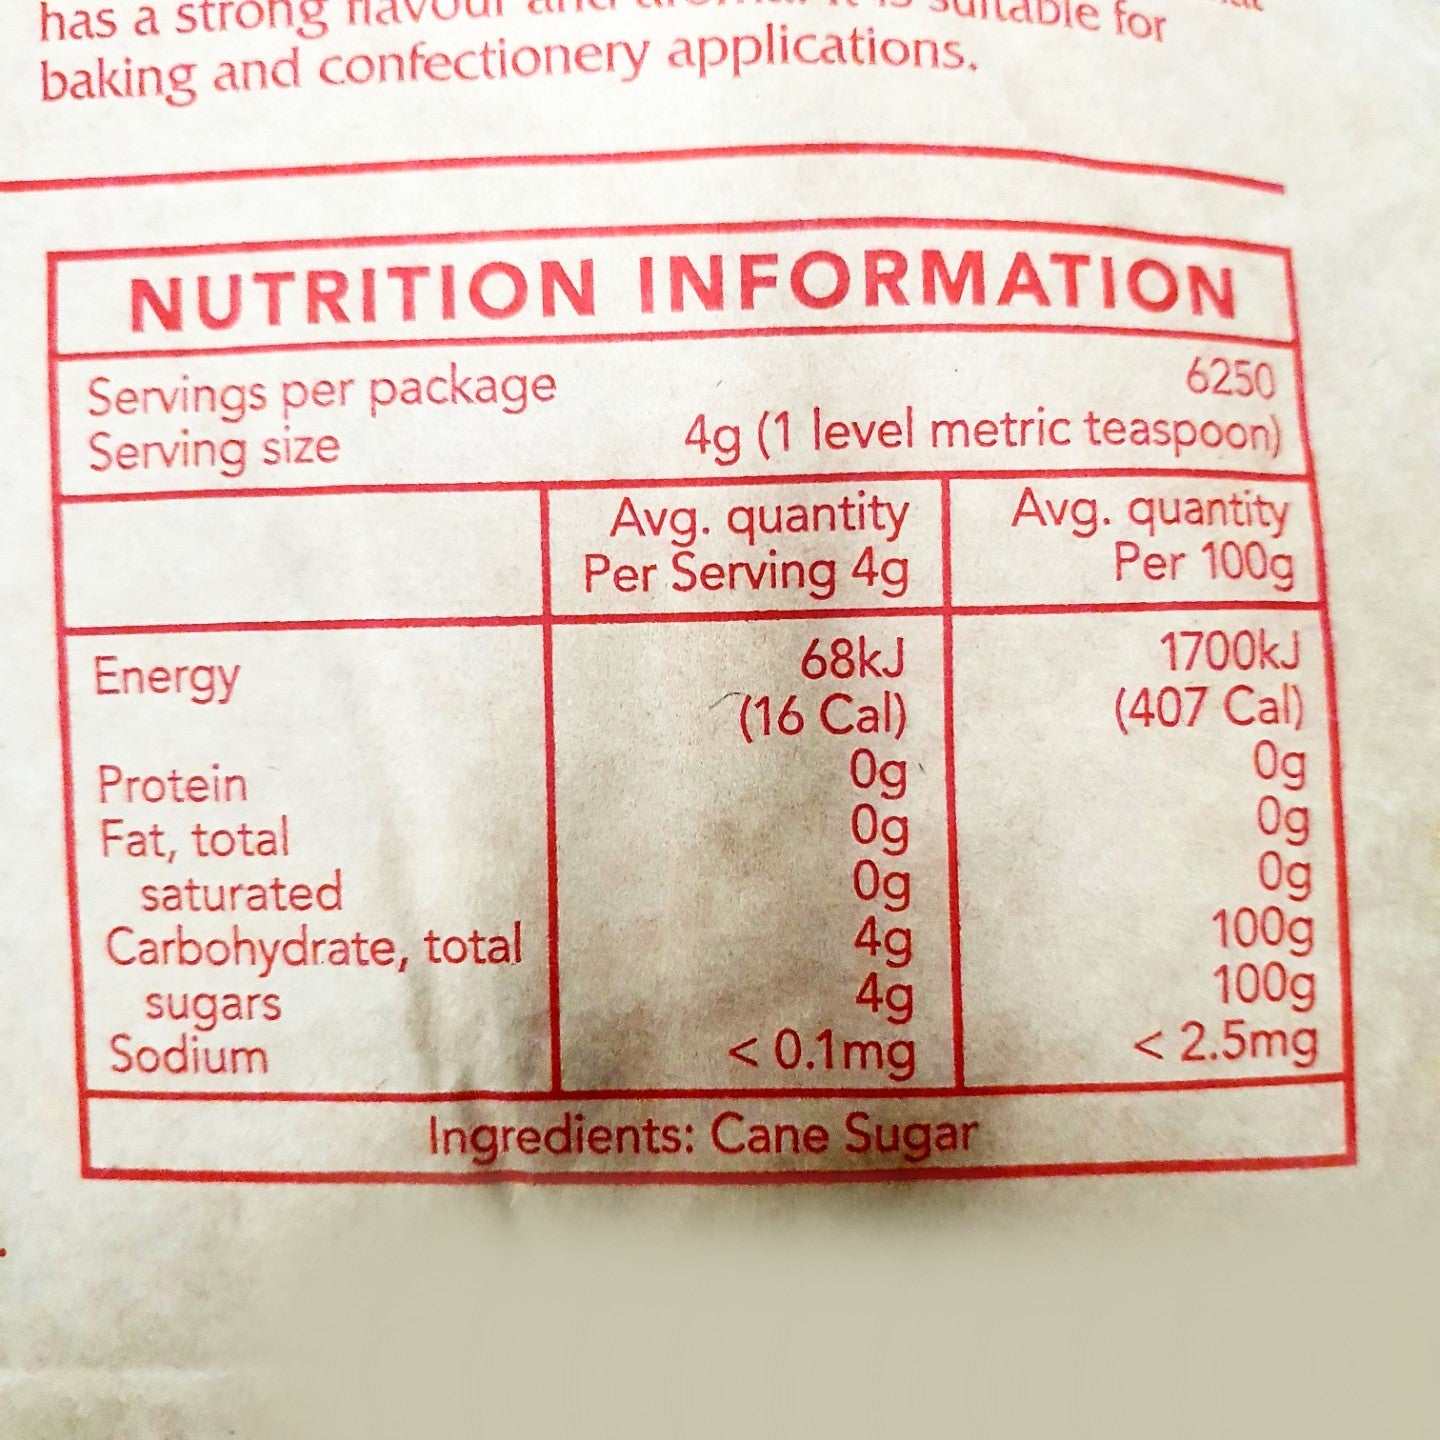 White Sugar CSR 25kg/설탕 씨에스알